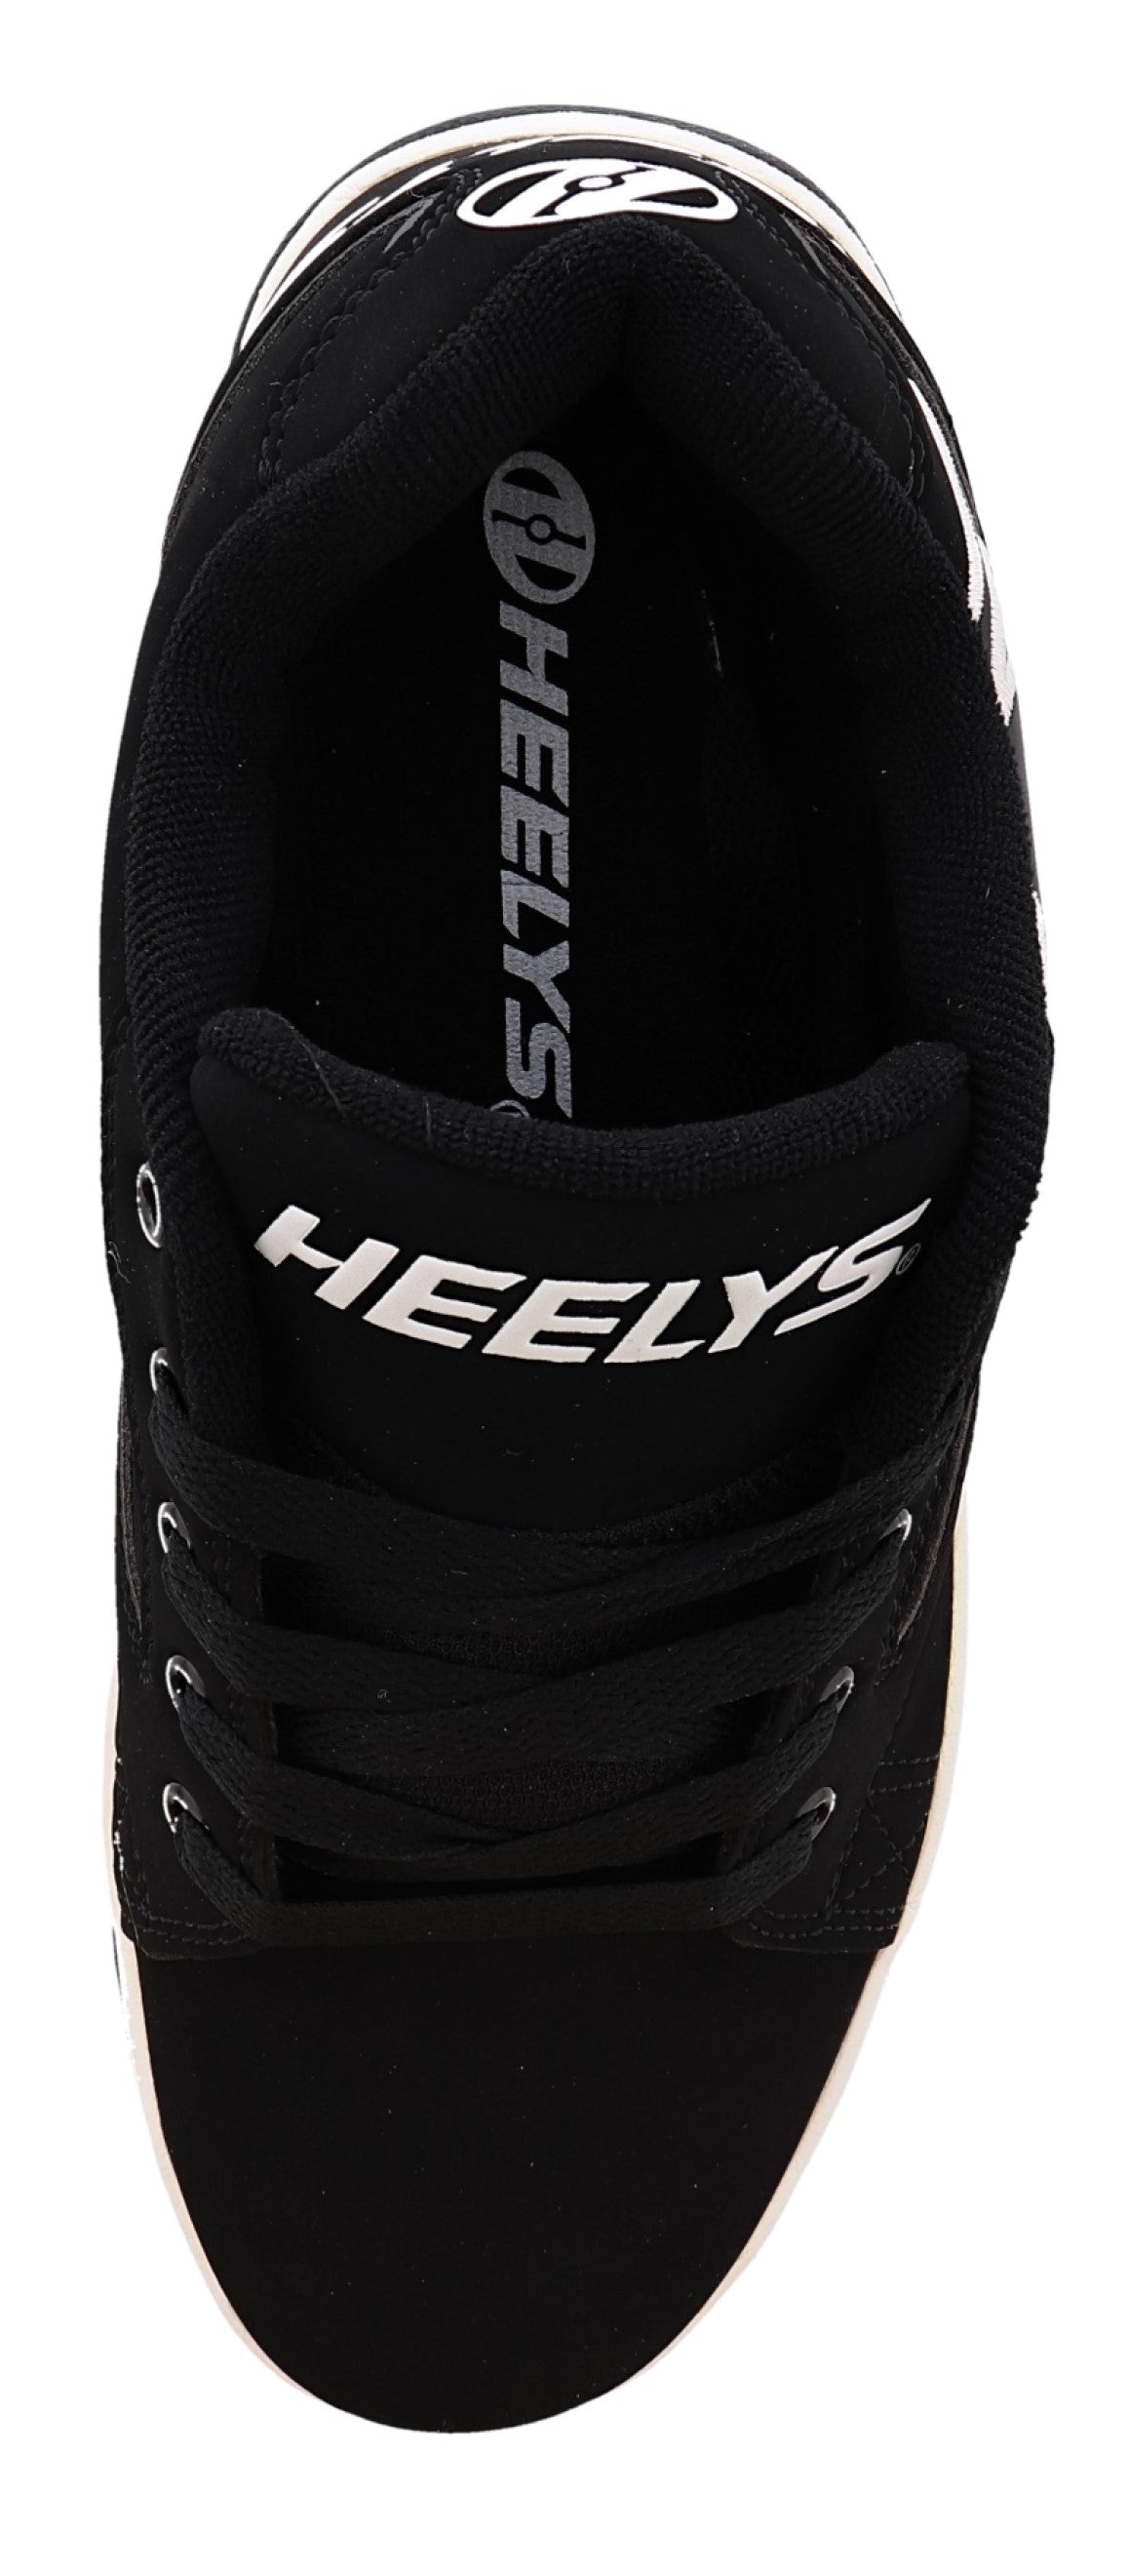 
                  
                    Heelys Shoes for Men Propel 2.0
                  
                